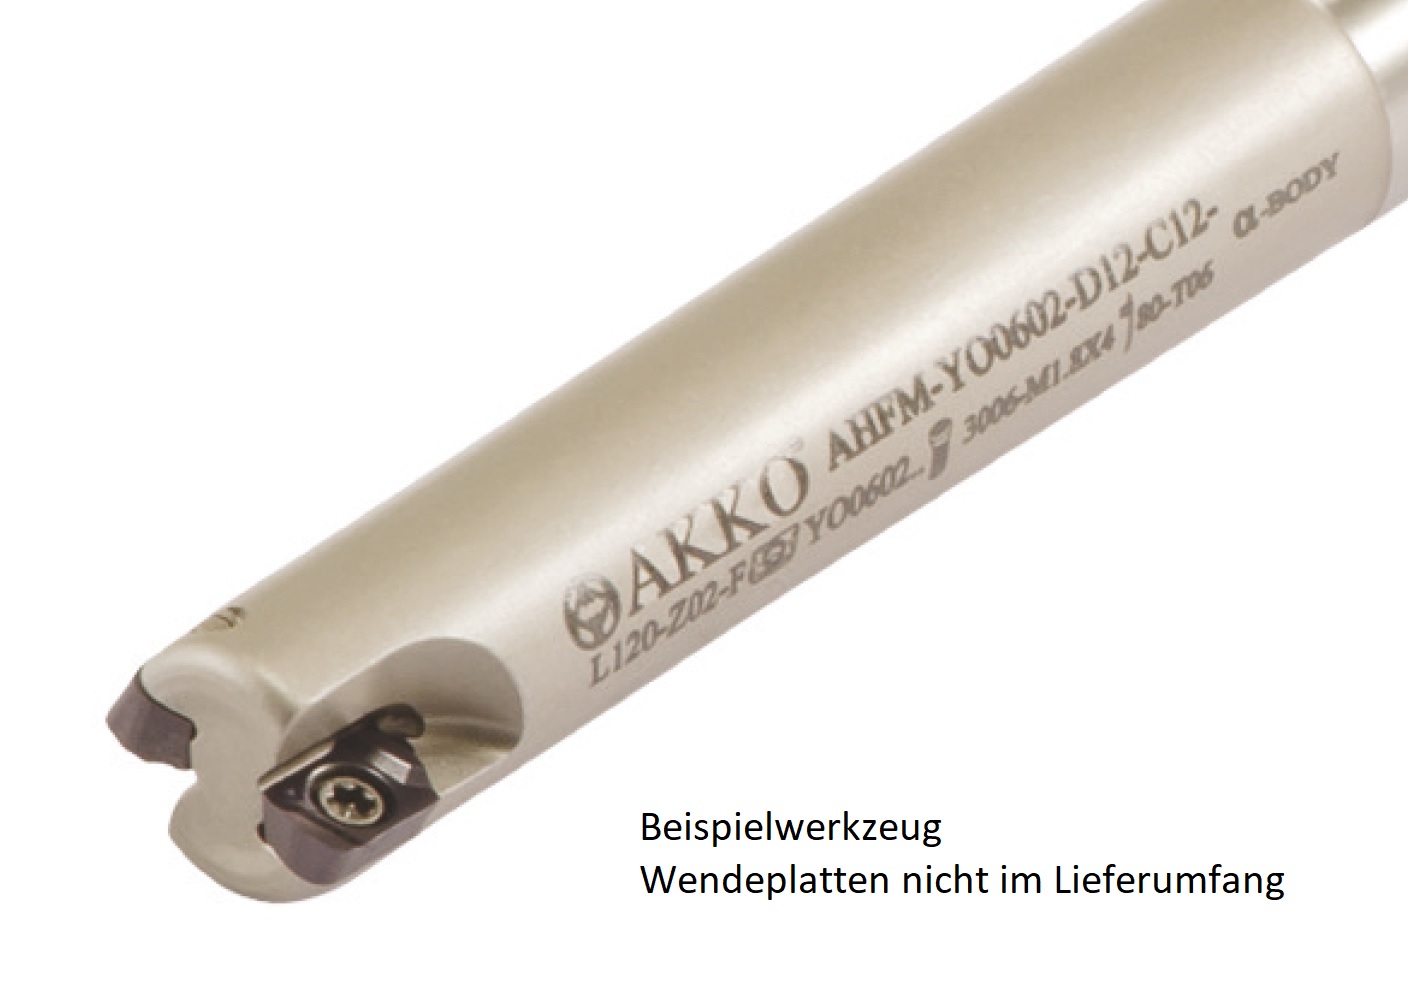 AKKO-Hochvorschub-Schaftfräser ø 12 mm, 90°, kompatibel mit Dijet YOHW 0602....
Schaft-ø 12, mit Innenkühlung, Z=2